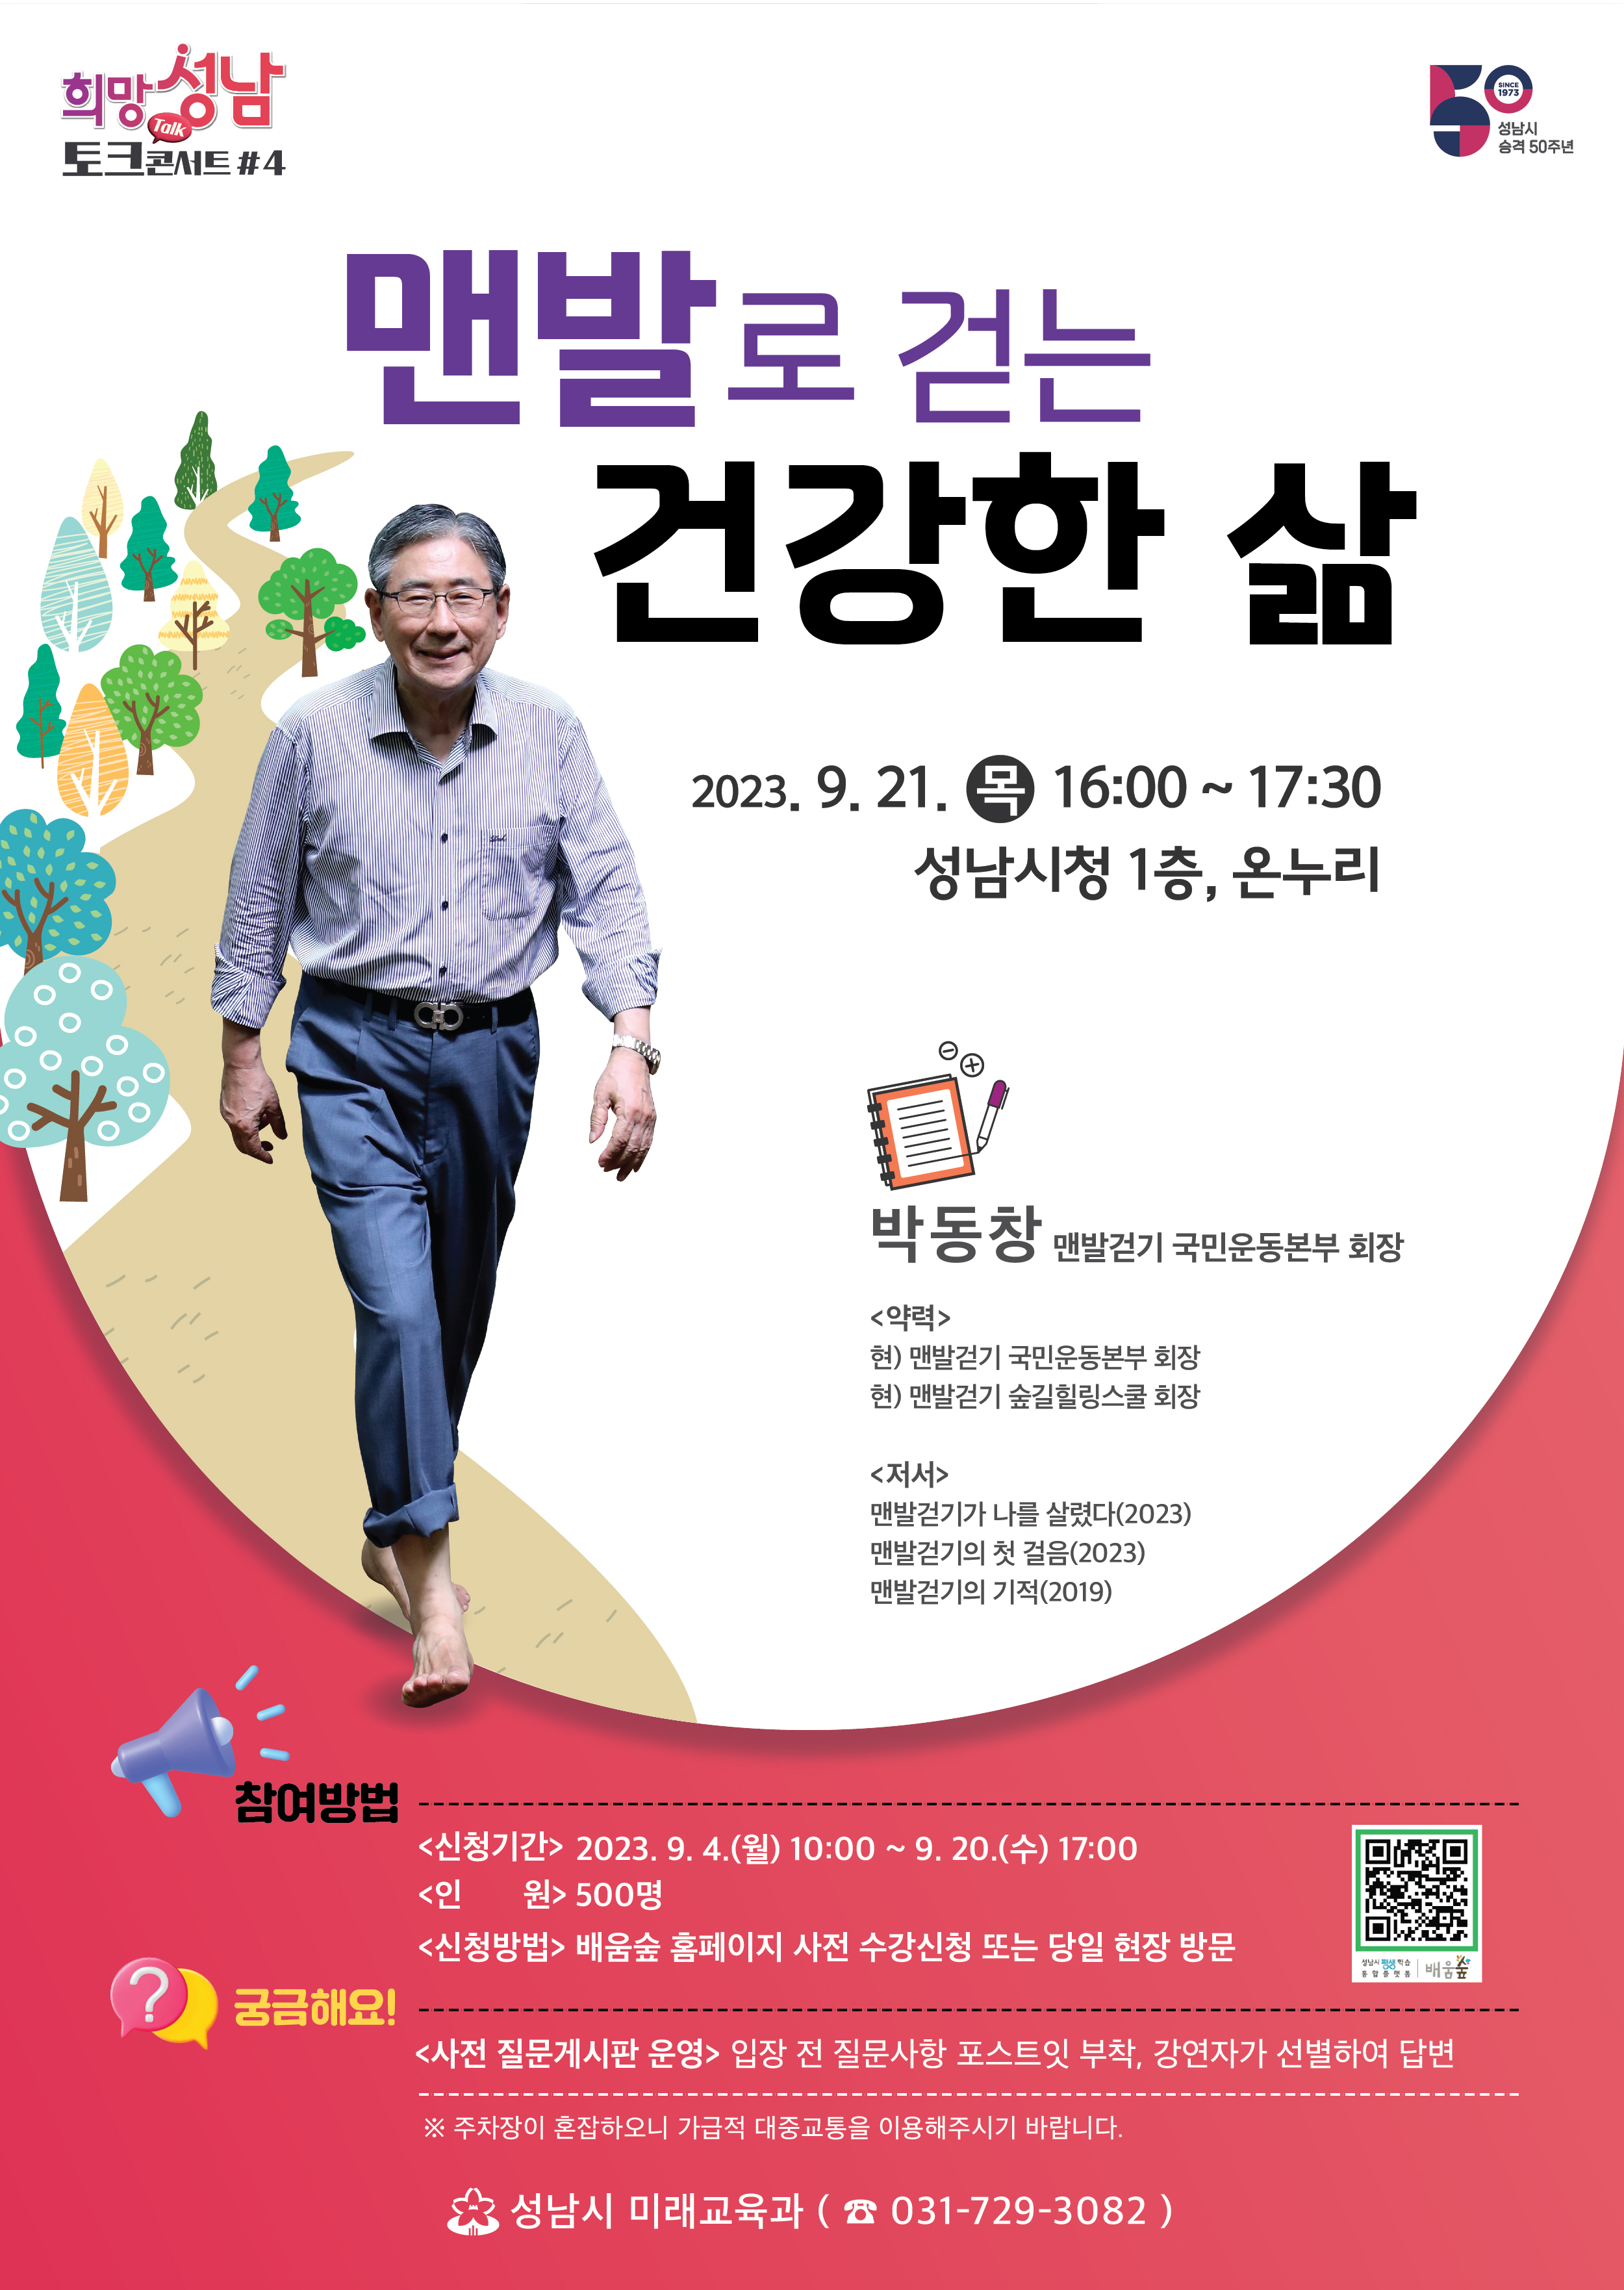 맨발로 걷는 건강한 삶
2023.9.21.(목) 16:00~17:30
성남시청 1층 온누리